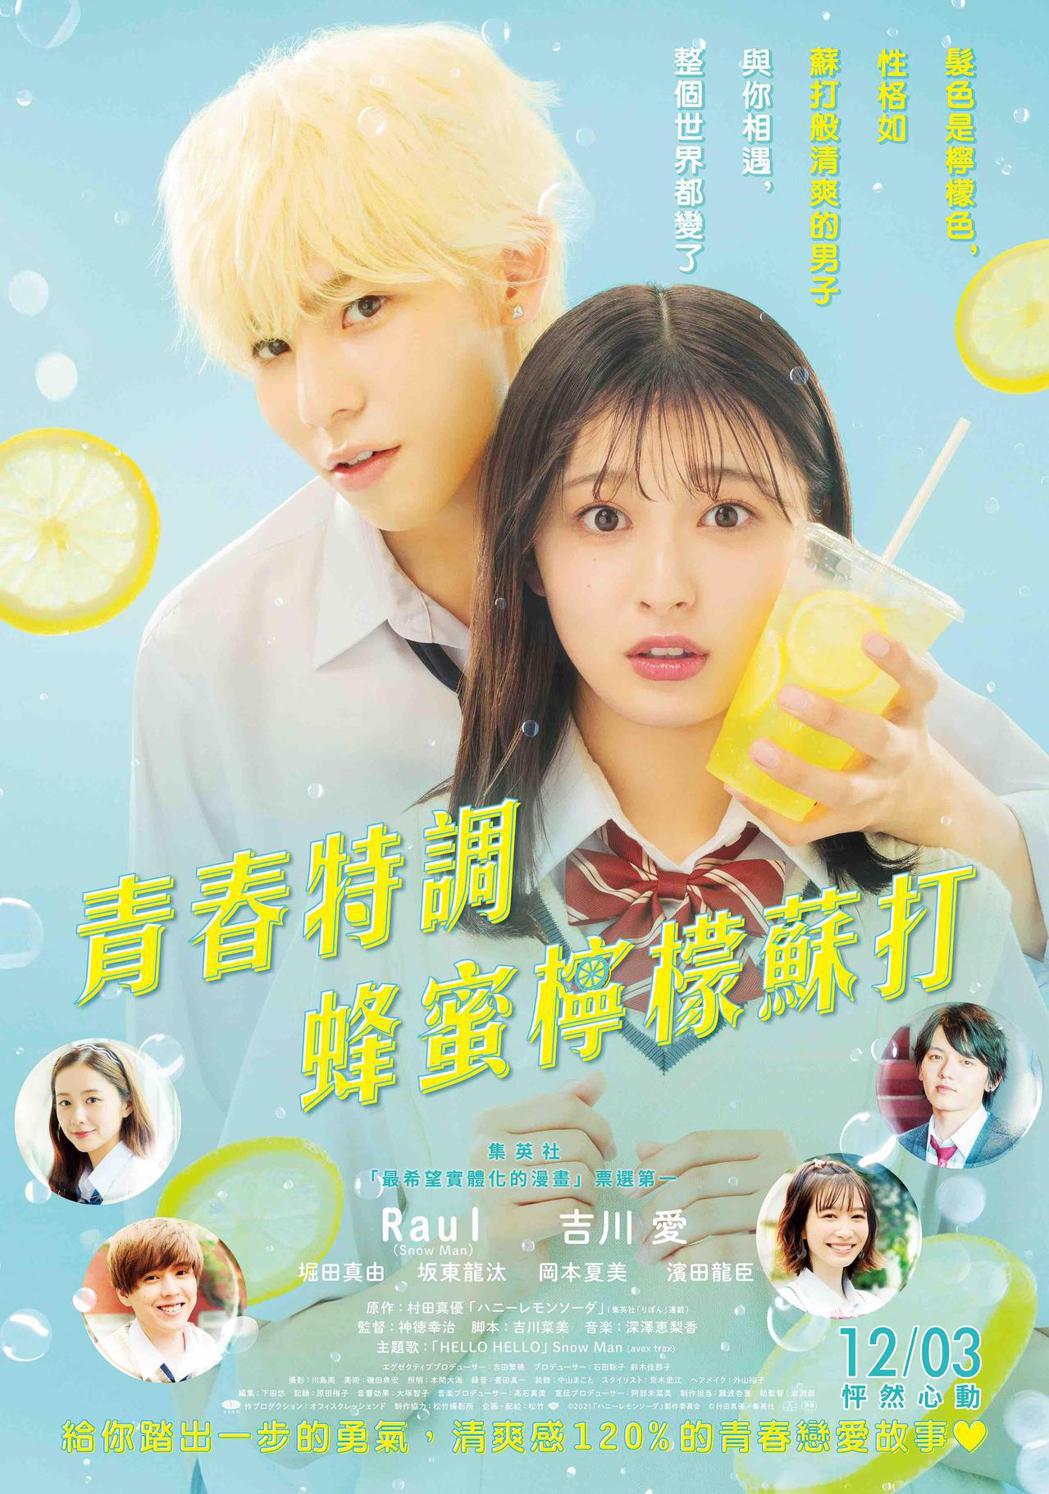 《青春特調蜂蜜檸檬蘇打》中文海報。捷傑提供